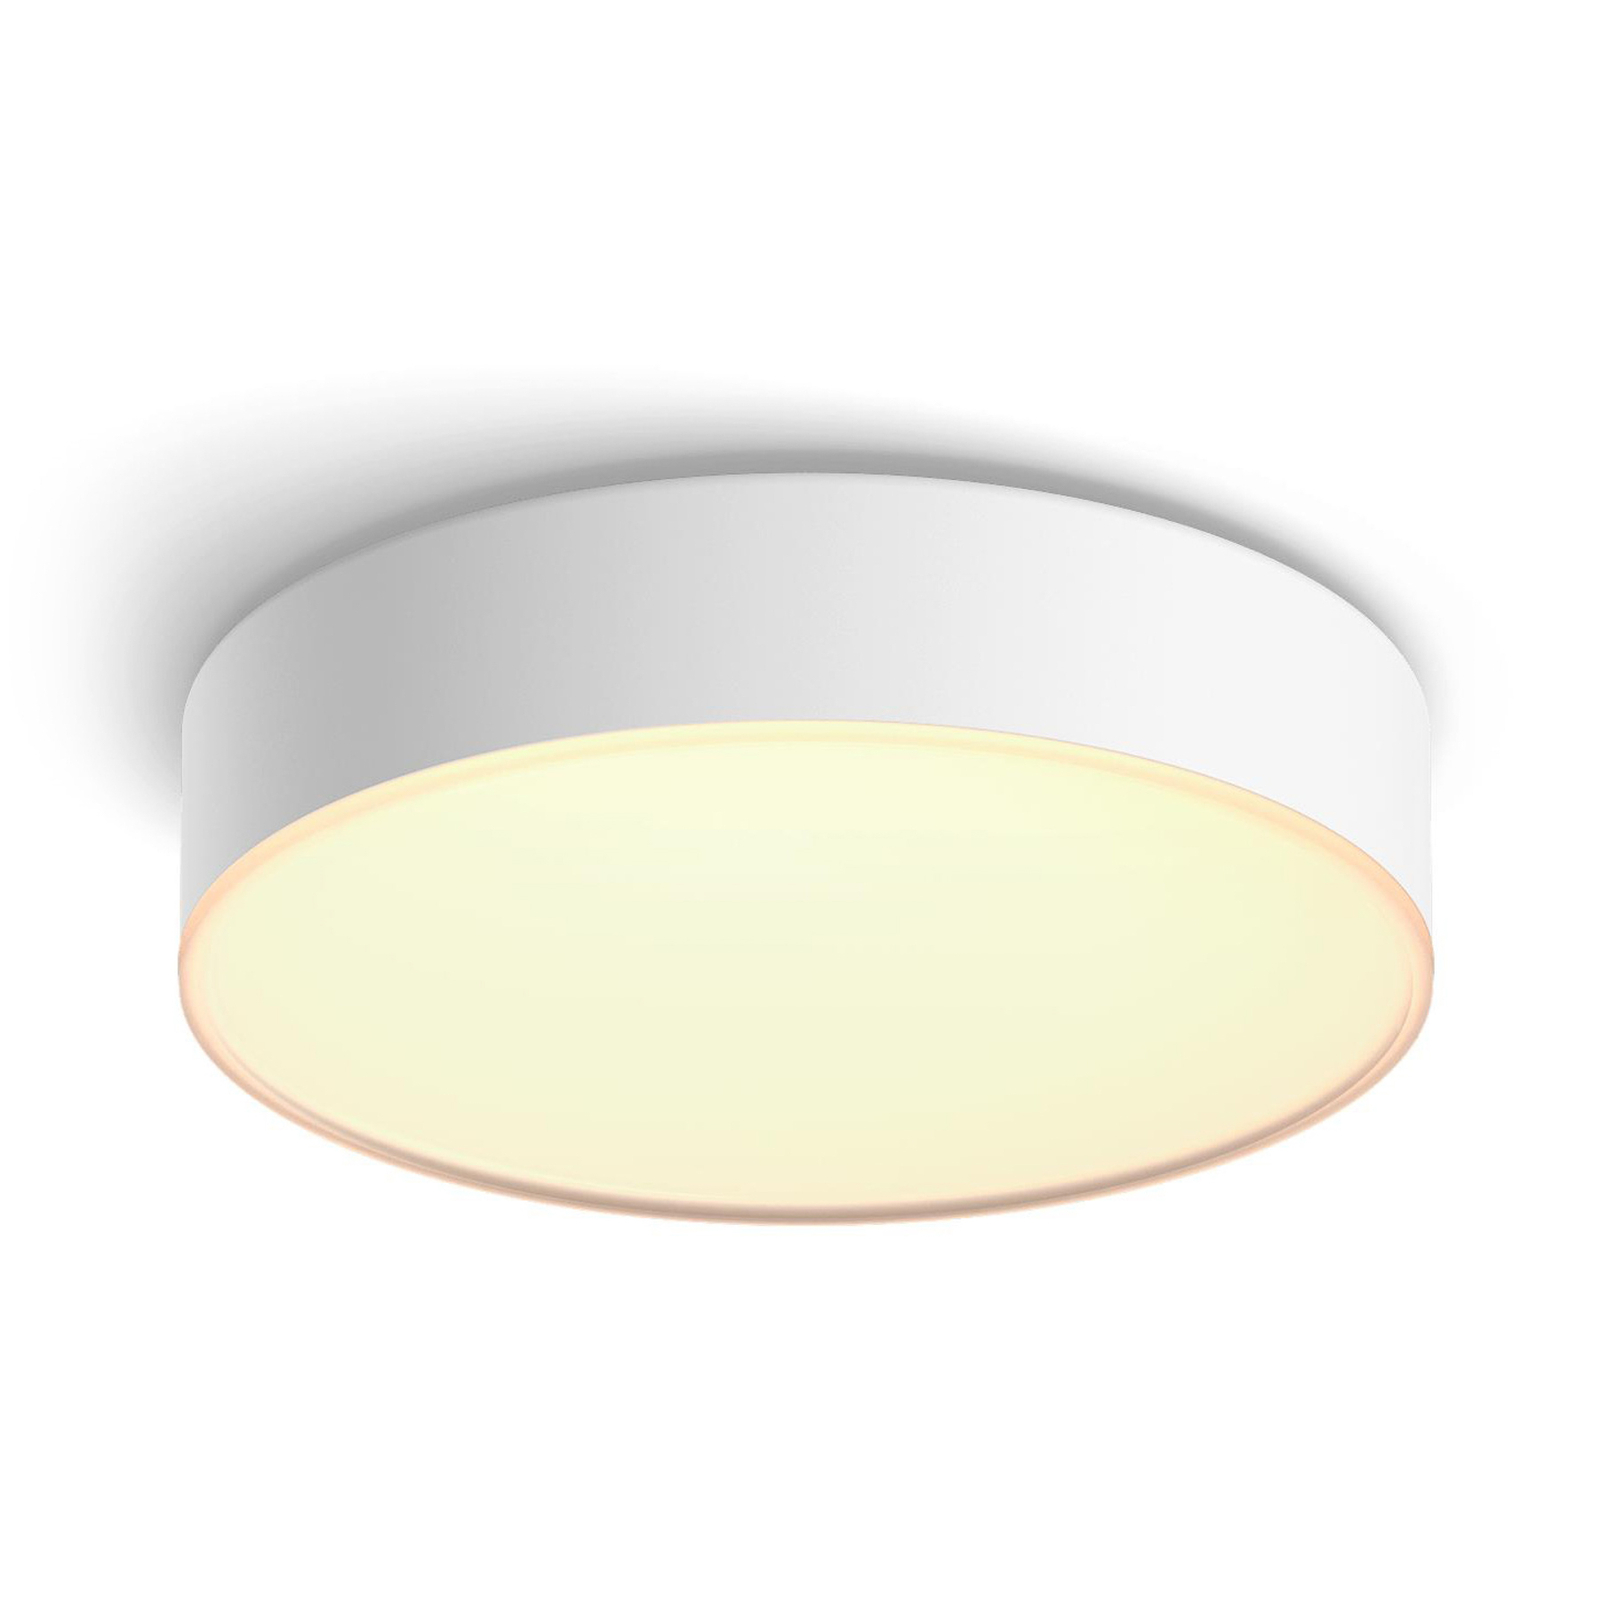 Philips Hue Enrave LED ceiling light 26.1cm white